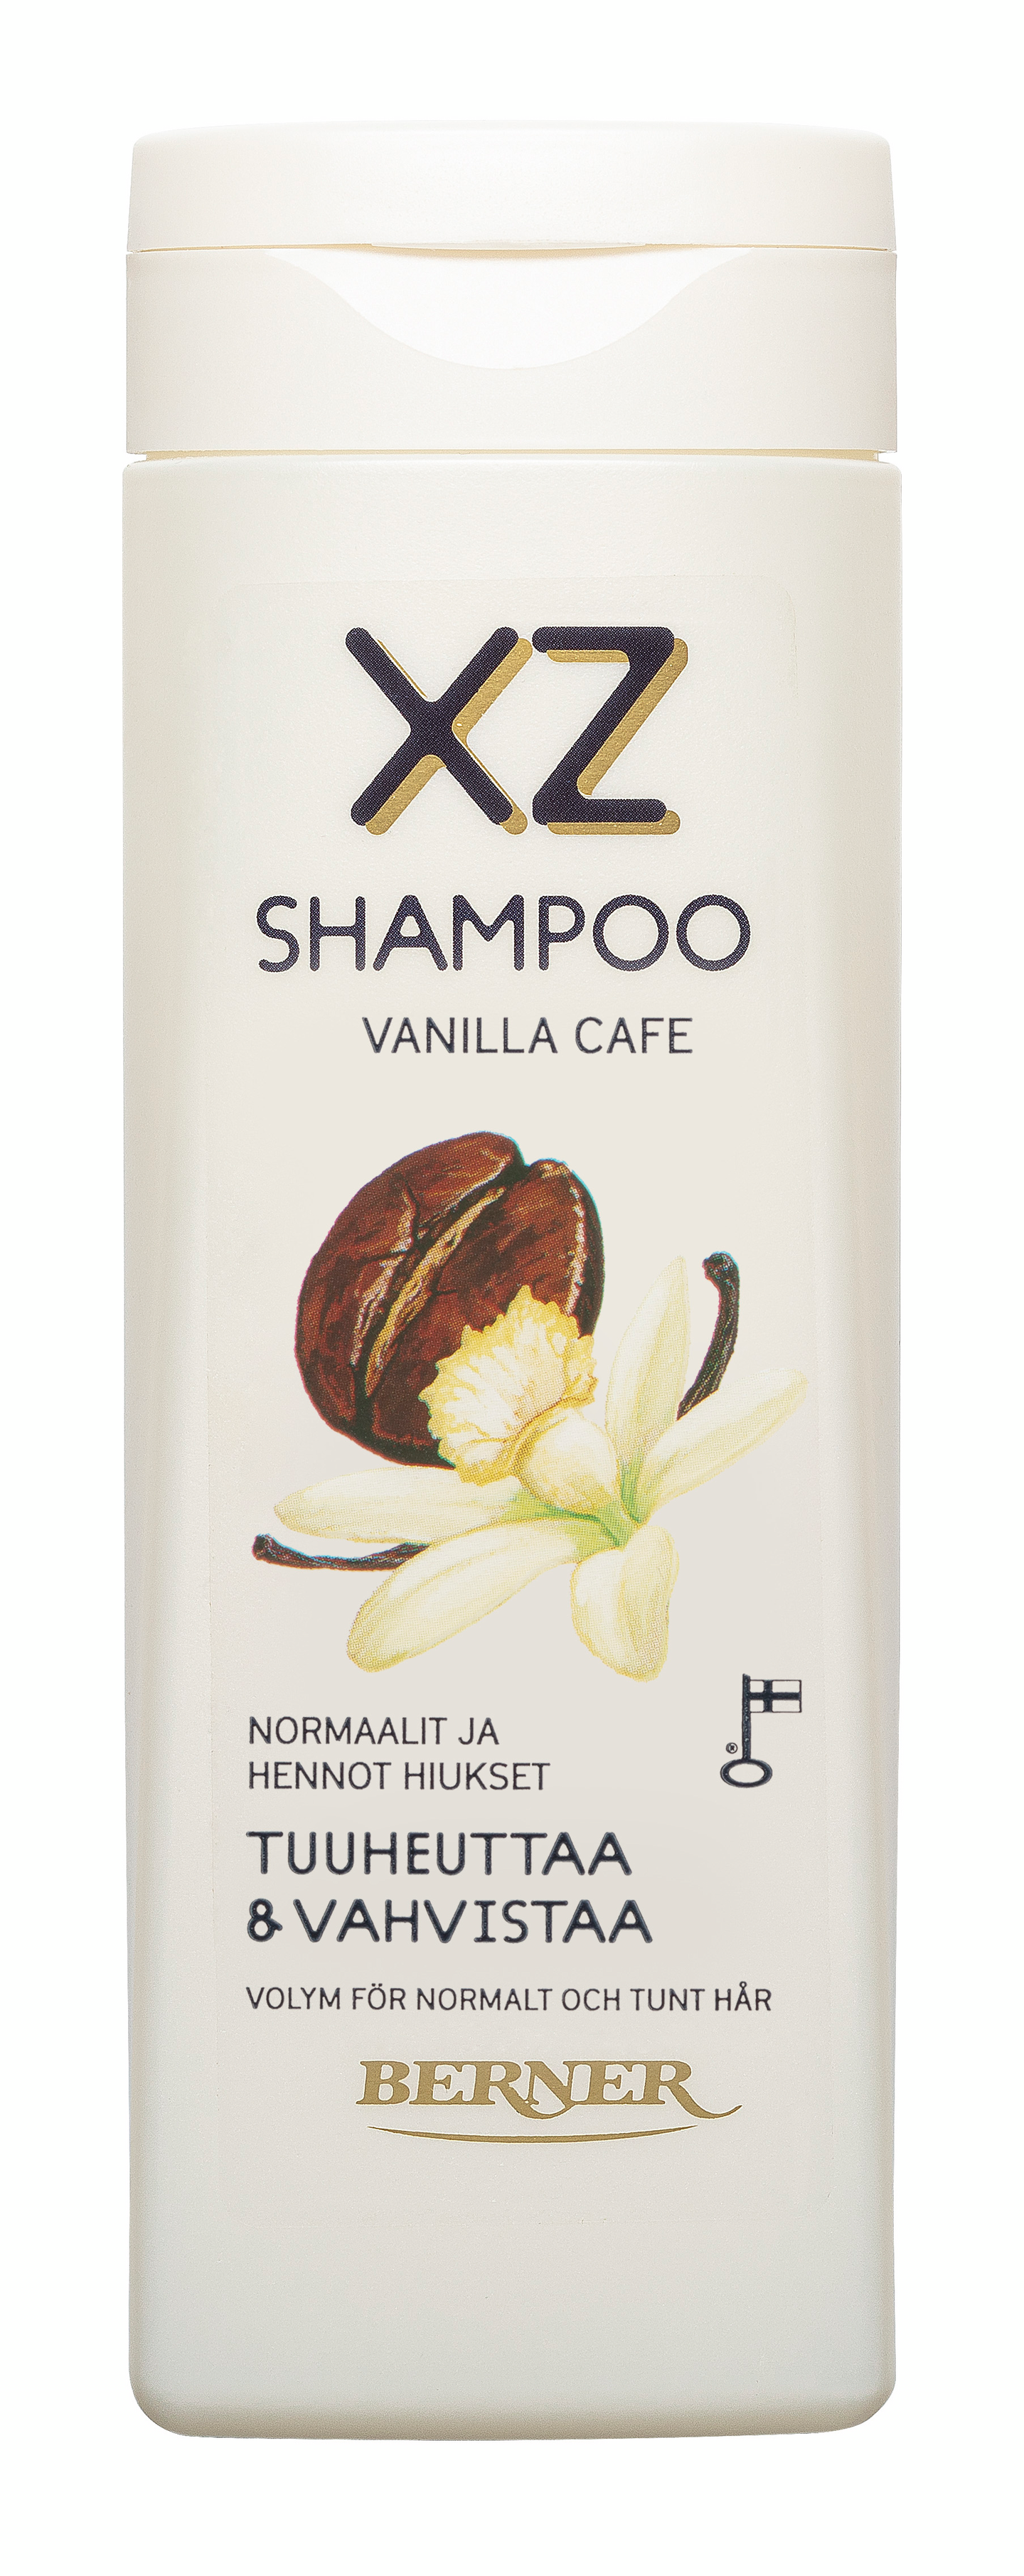 XZ shampoo 250ml Vanilla Cafe